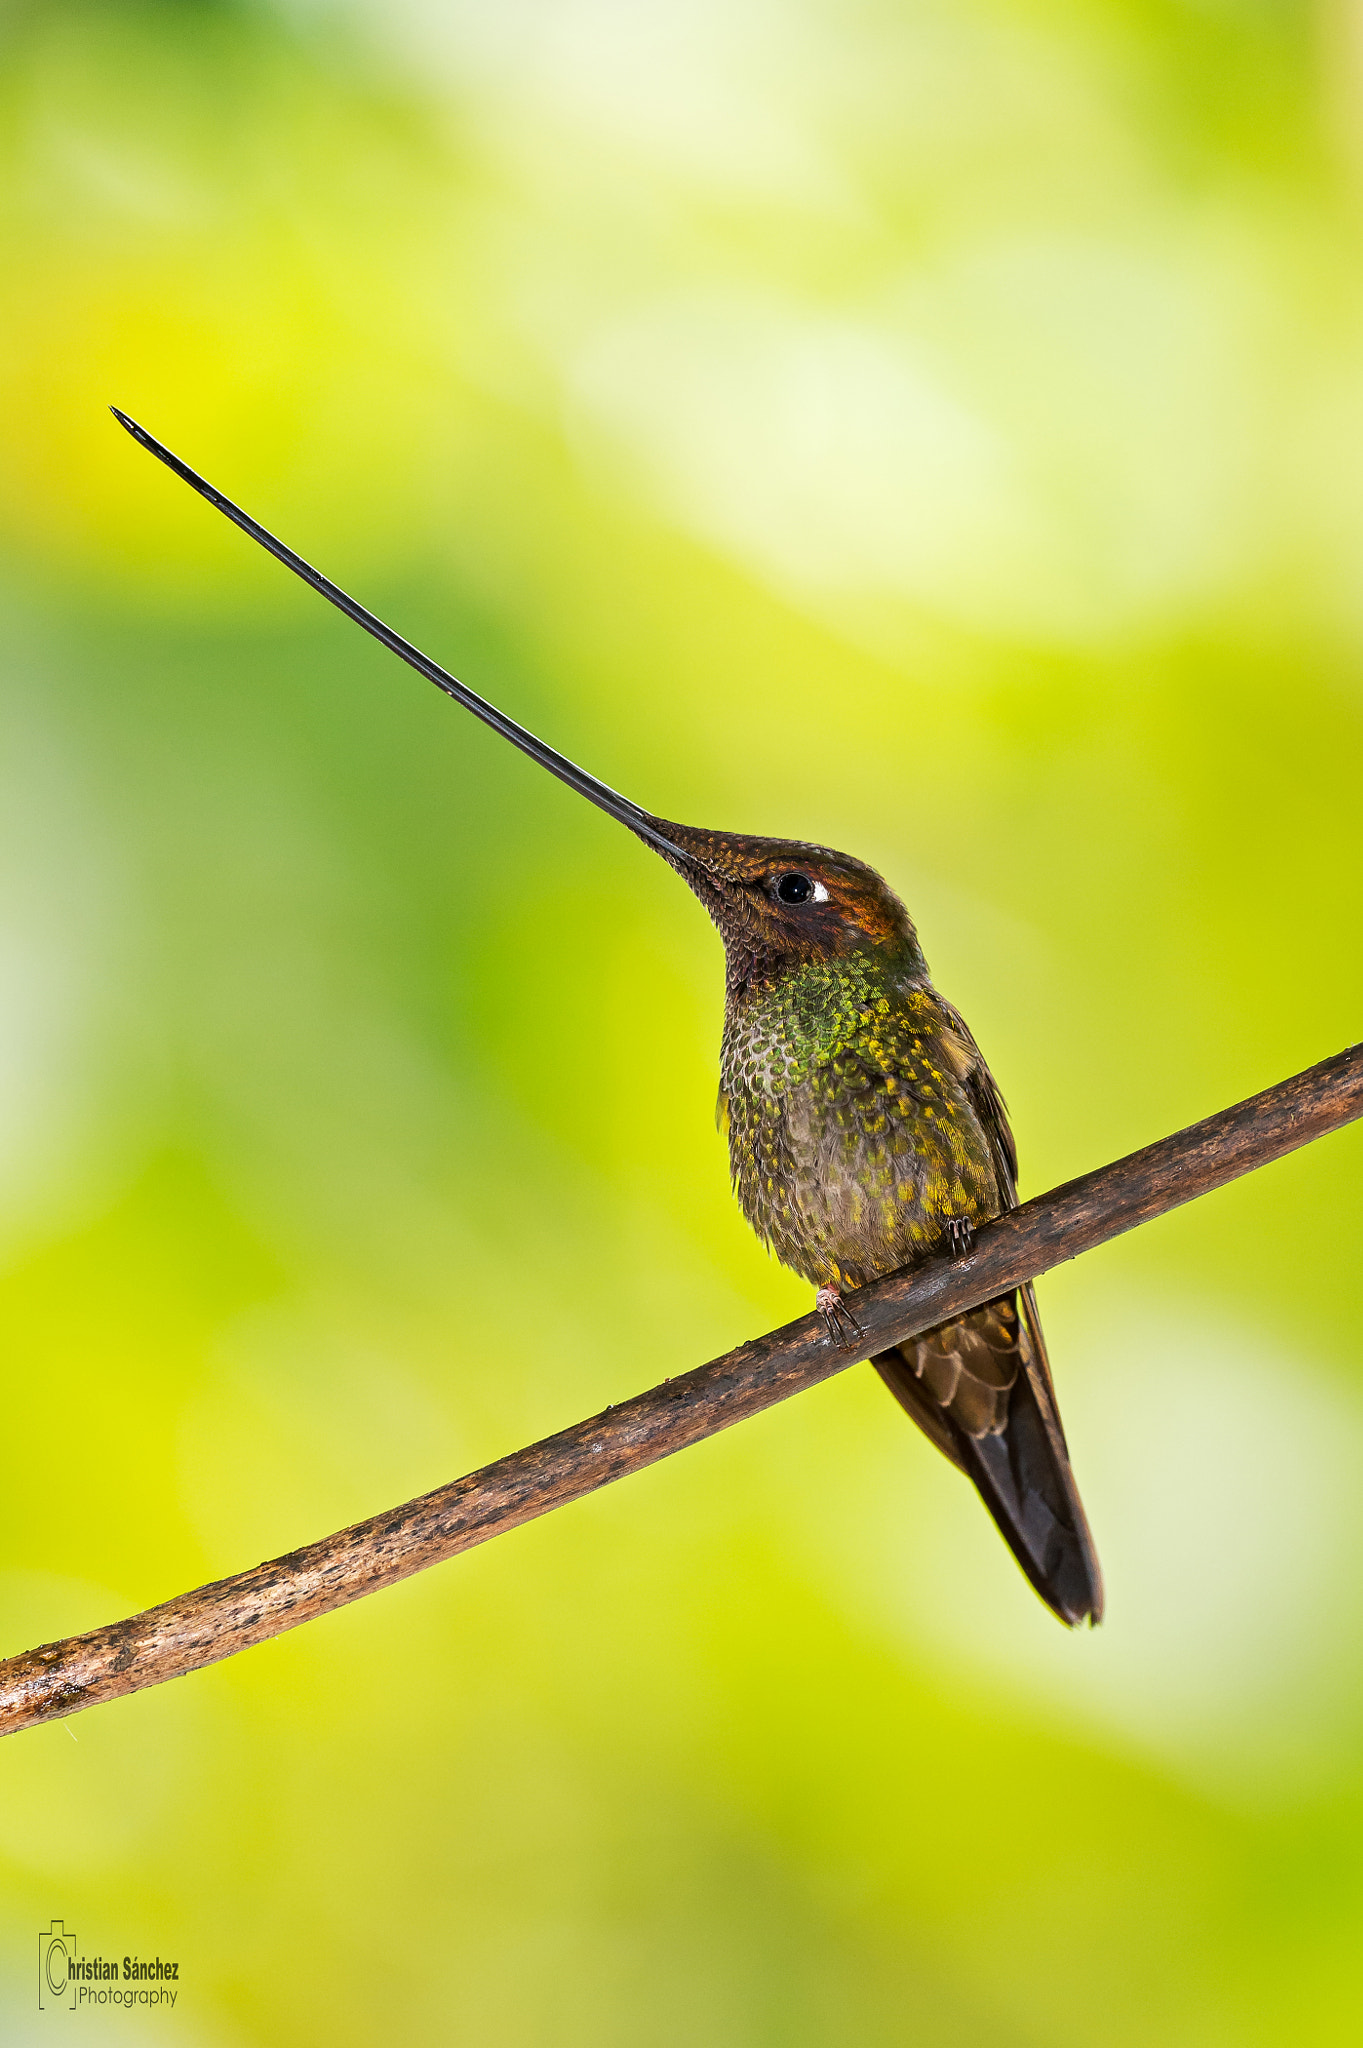 Nikon D4 sample photo. Sword-billed hummingbird photography